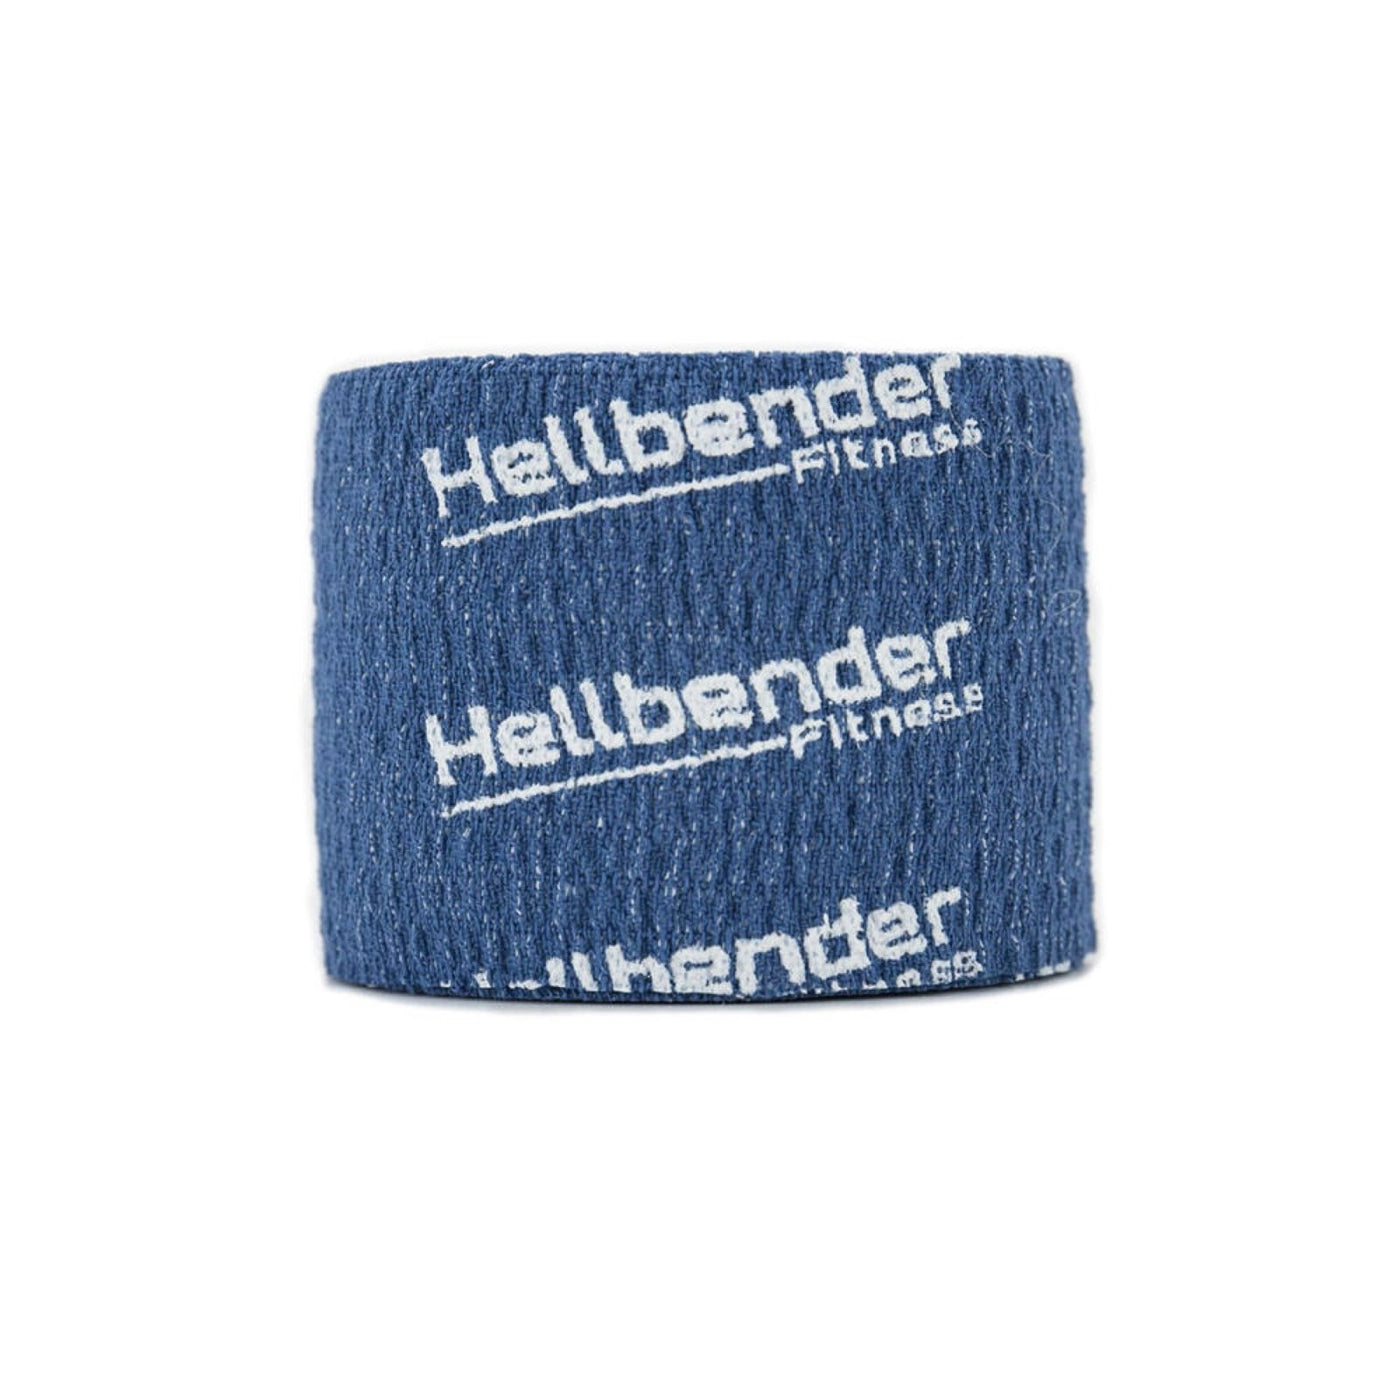 Elastisk Sportstape X Hellbender - 5cm*6,8m - HellbenderFitness